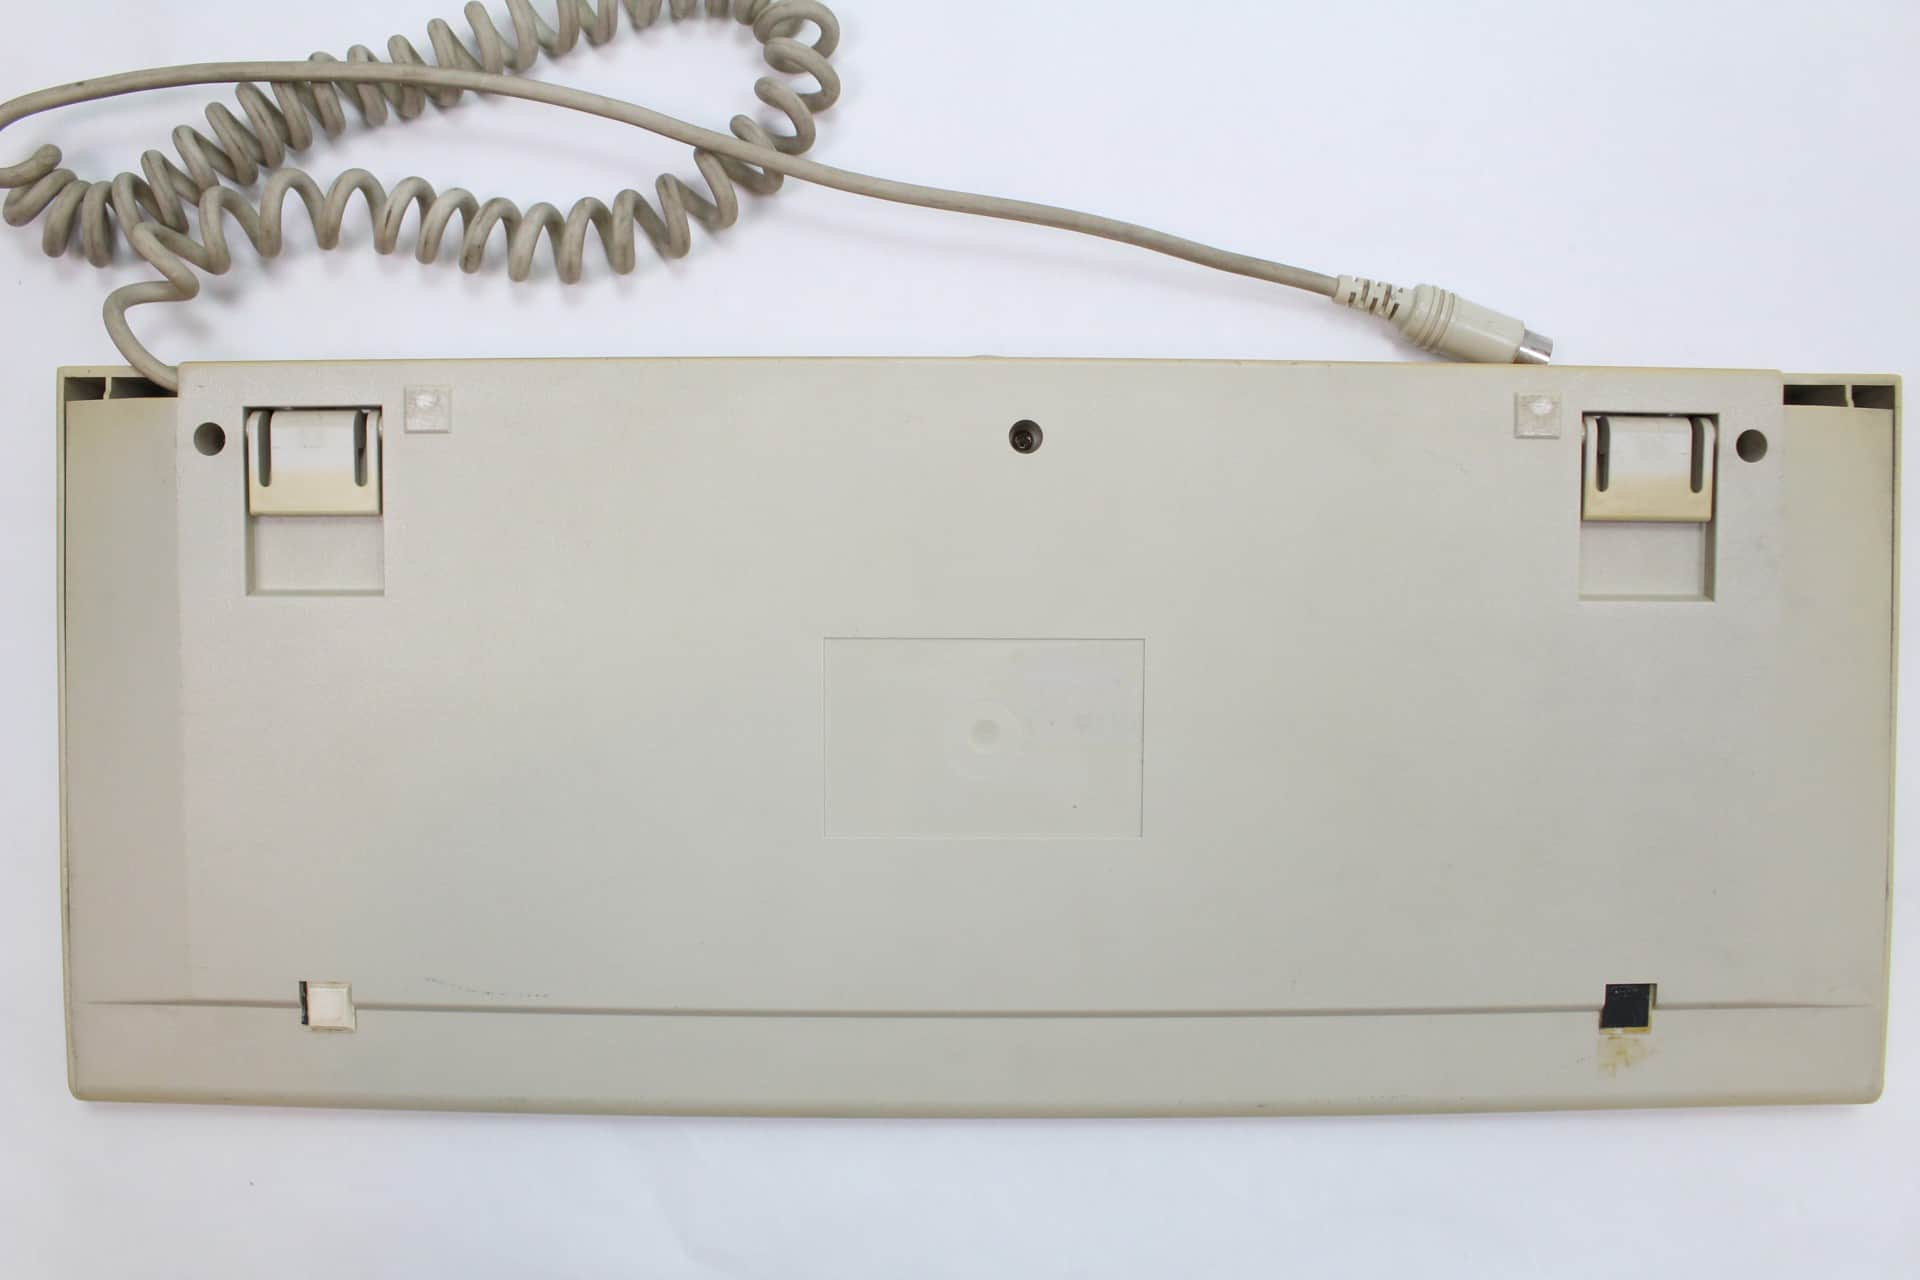 Commodore klávesnice k PC